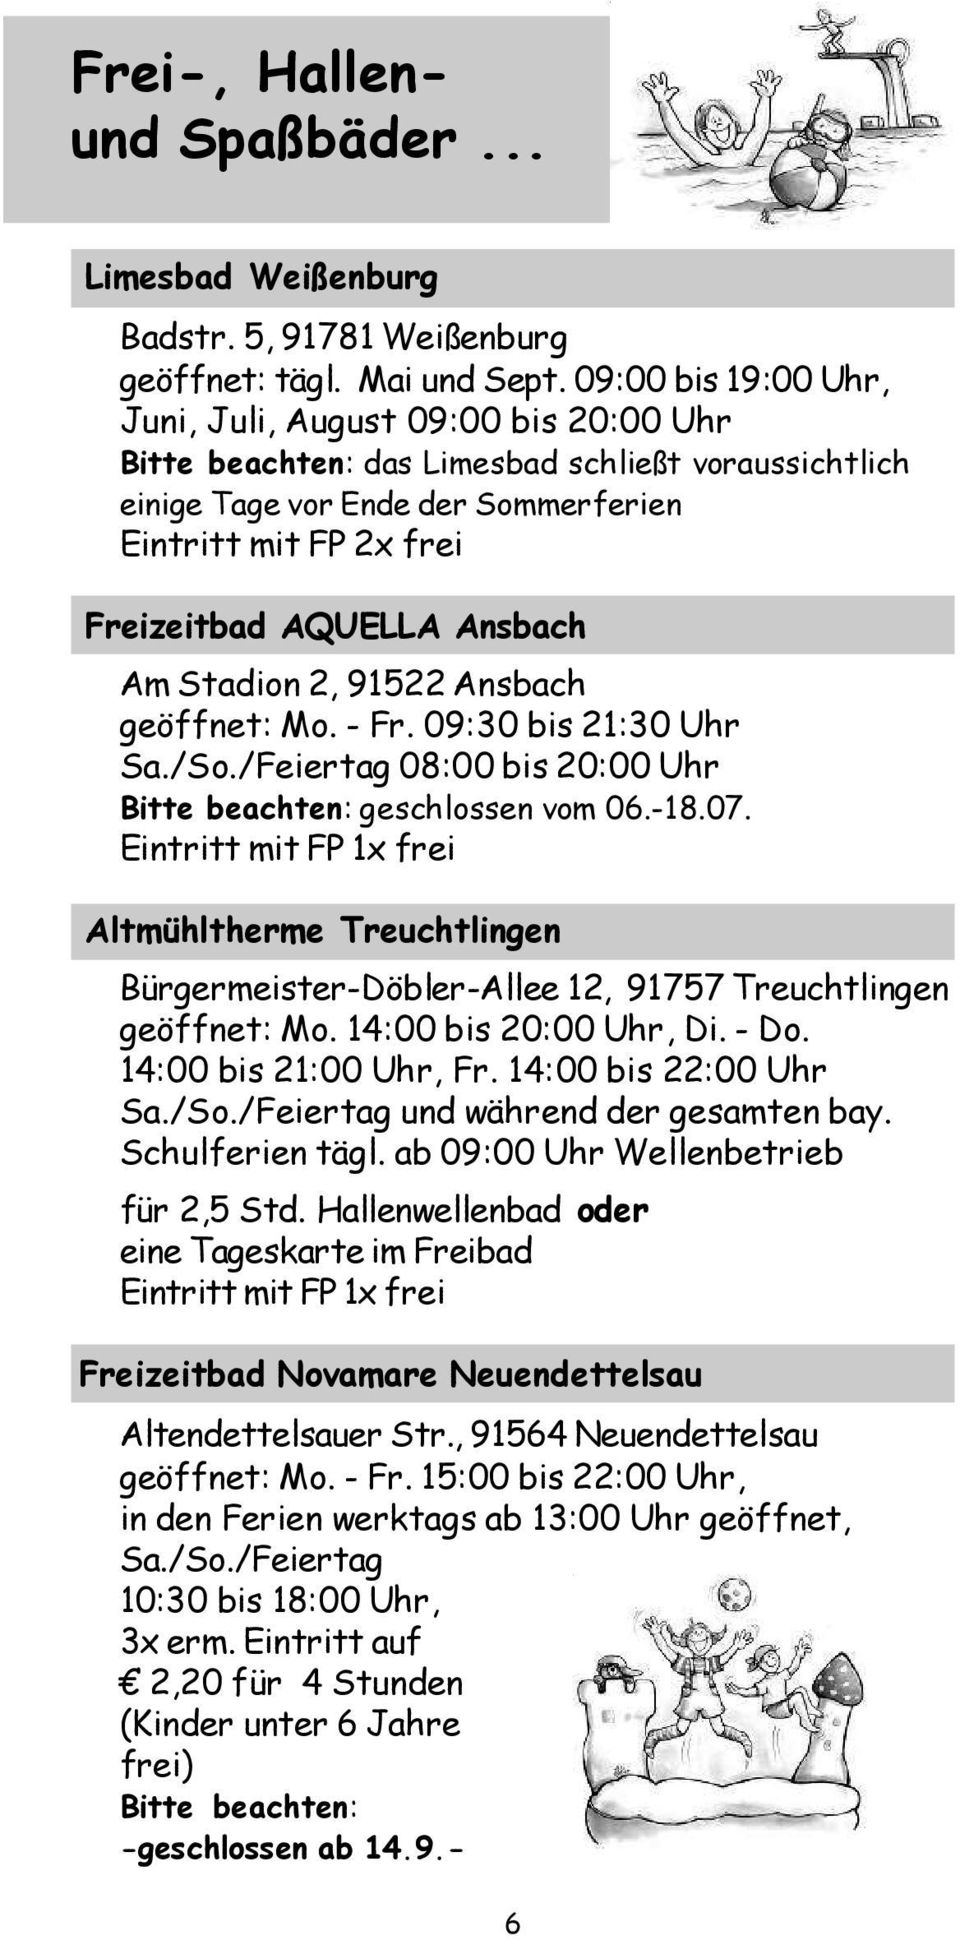 Ansbach Am Stadion 2, 91522 Ansbach geöffnet: Mo. - Fr. 09:30 bis 21:30 Uhr Sa./So./Feiertag 08:00 bis 20:00 Uhr Bitte beachten: geschlossen vom 06.-18.07.